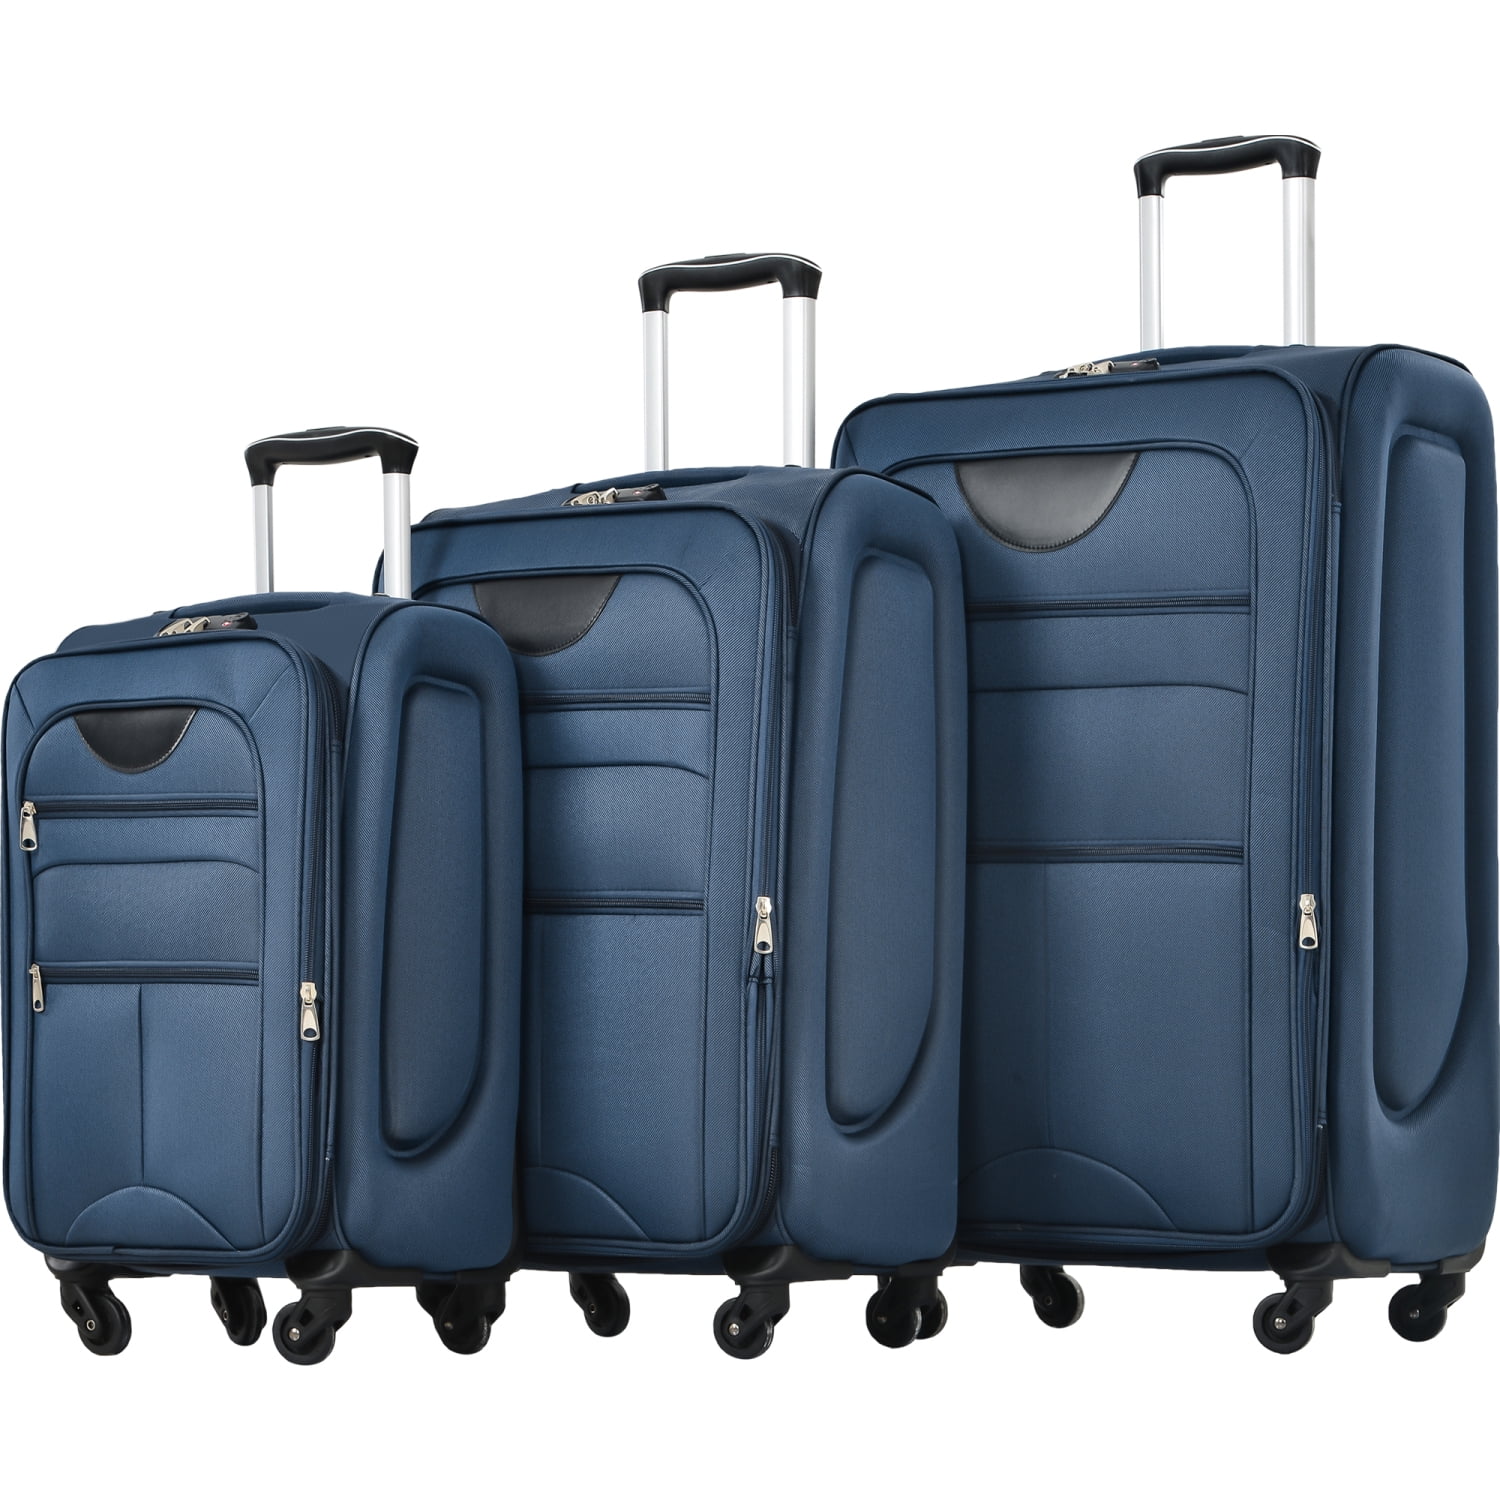 3 Pcs Luggage Set with TSA Lock, Lightweight Expandable